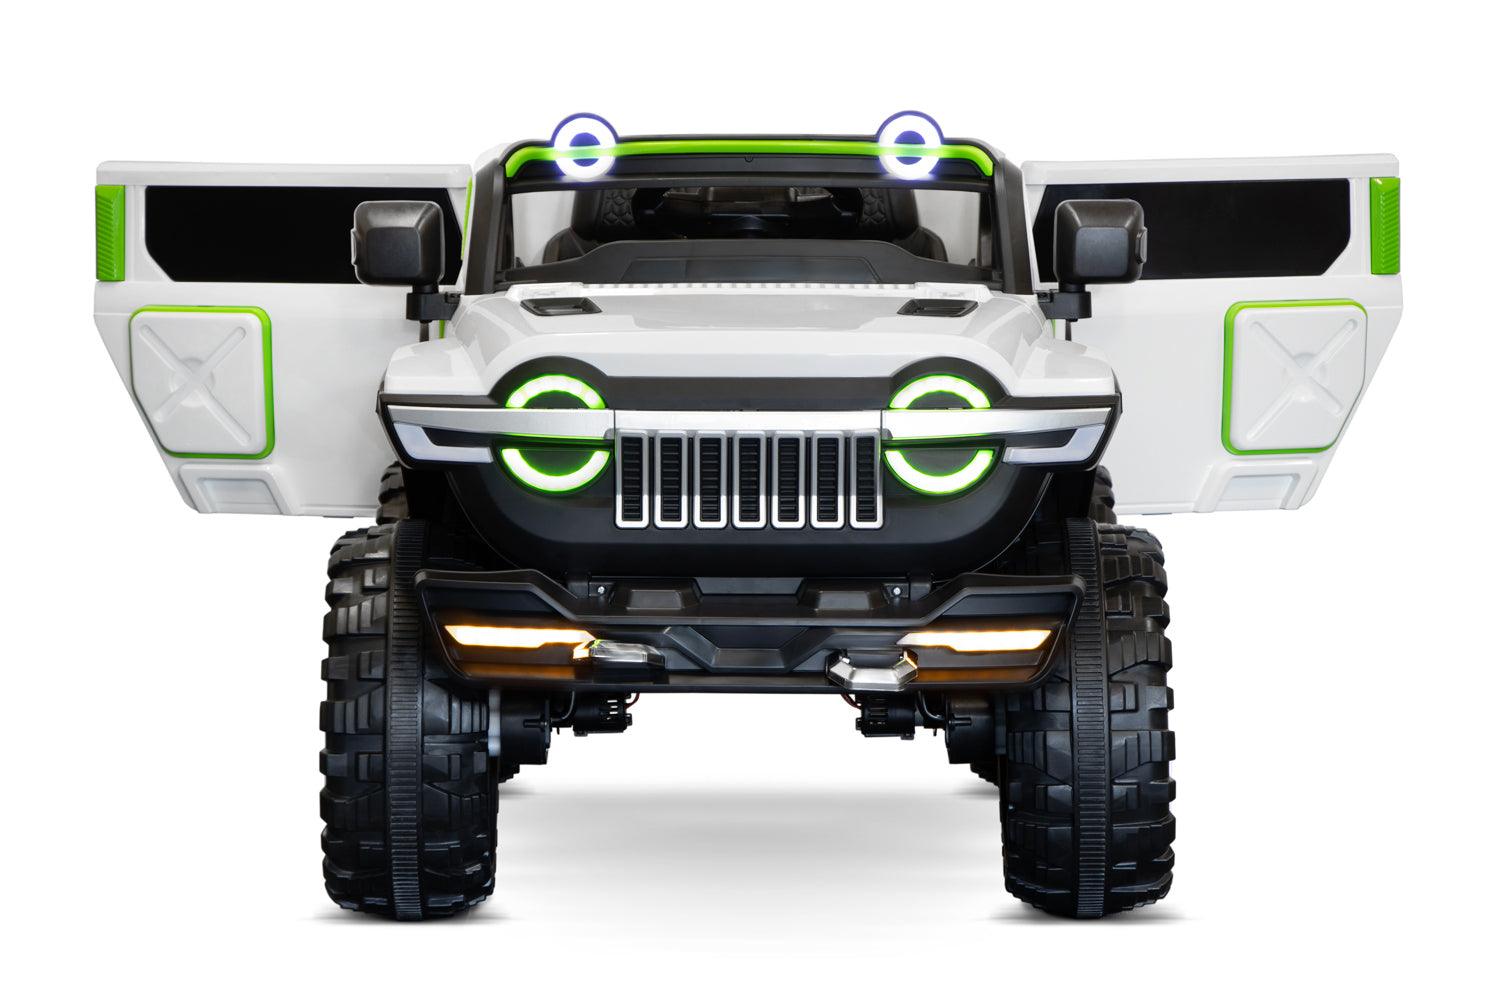 Elektro Kinderauto SUV Ultimate UTV Allrad: Ein Offroad-Abenteuer für Kinder! - kidsdrive.net - Rideonkidcar - Elektroauto für Kinder - Geschenkidee - Kinderfahrzeug